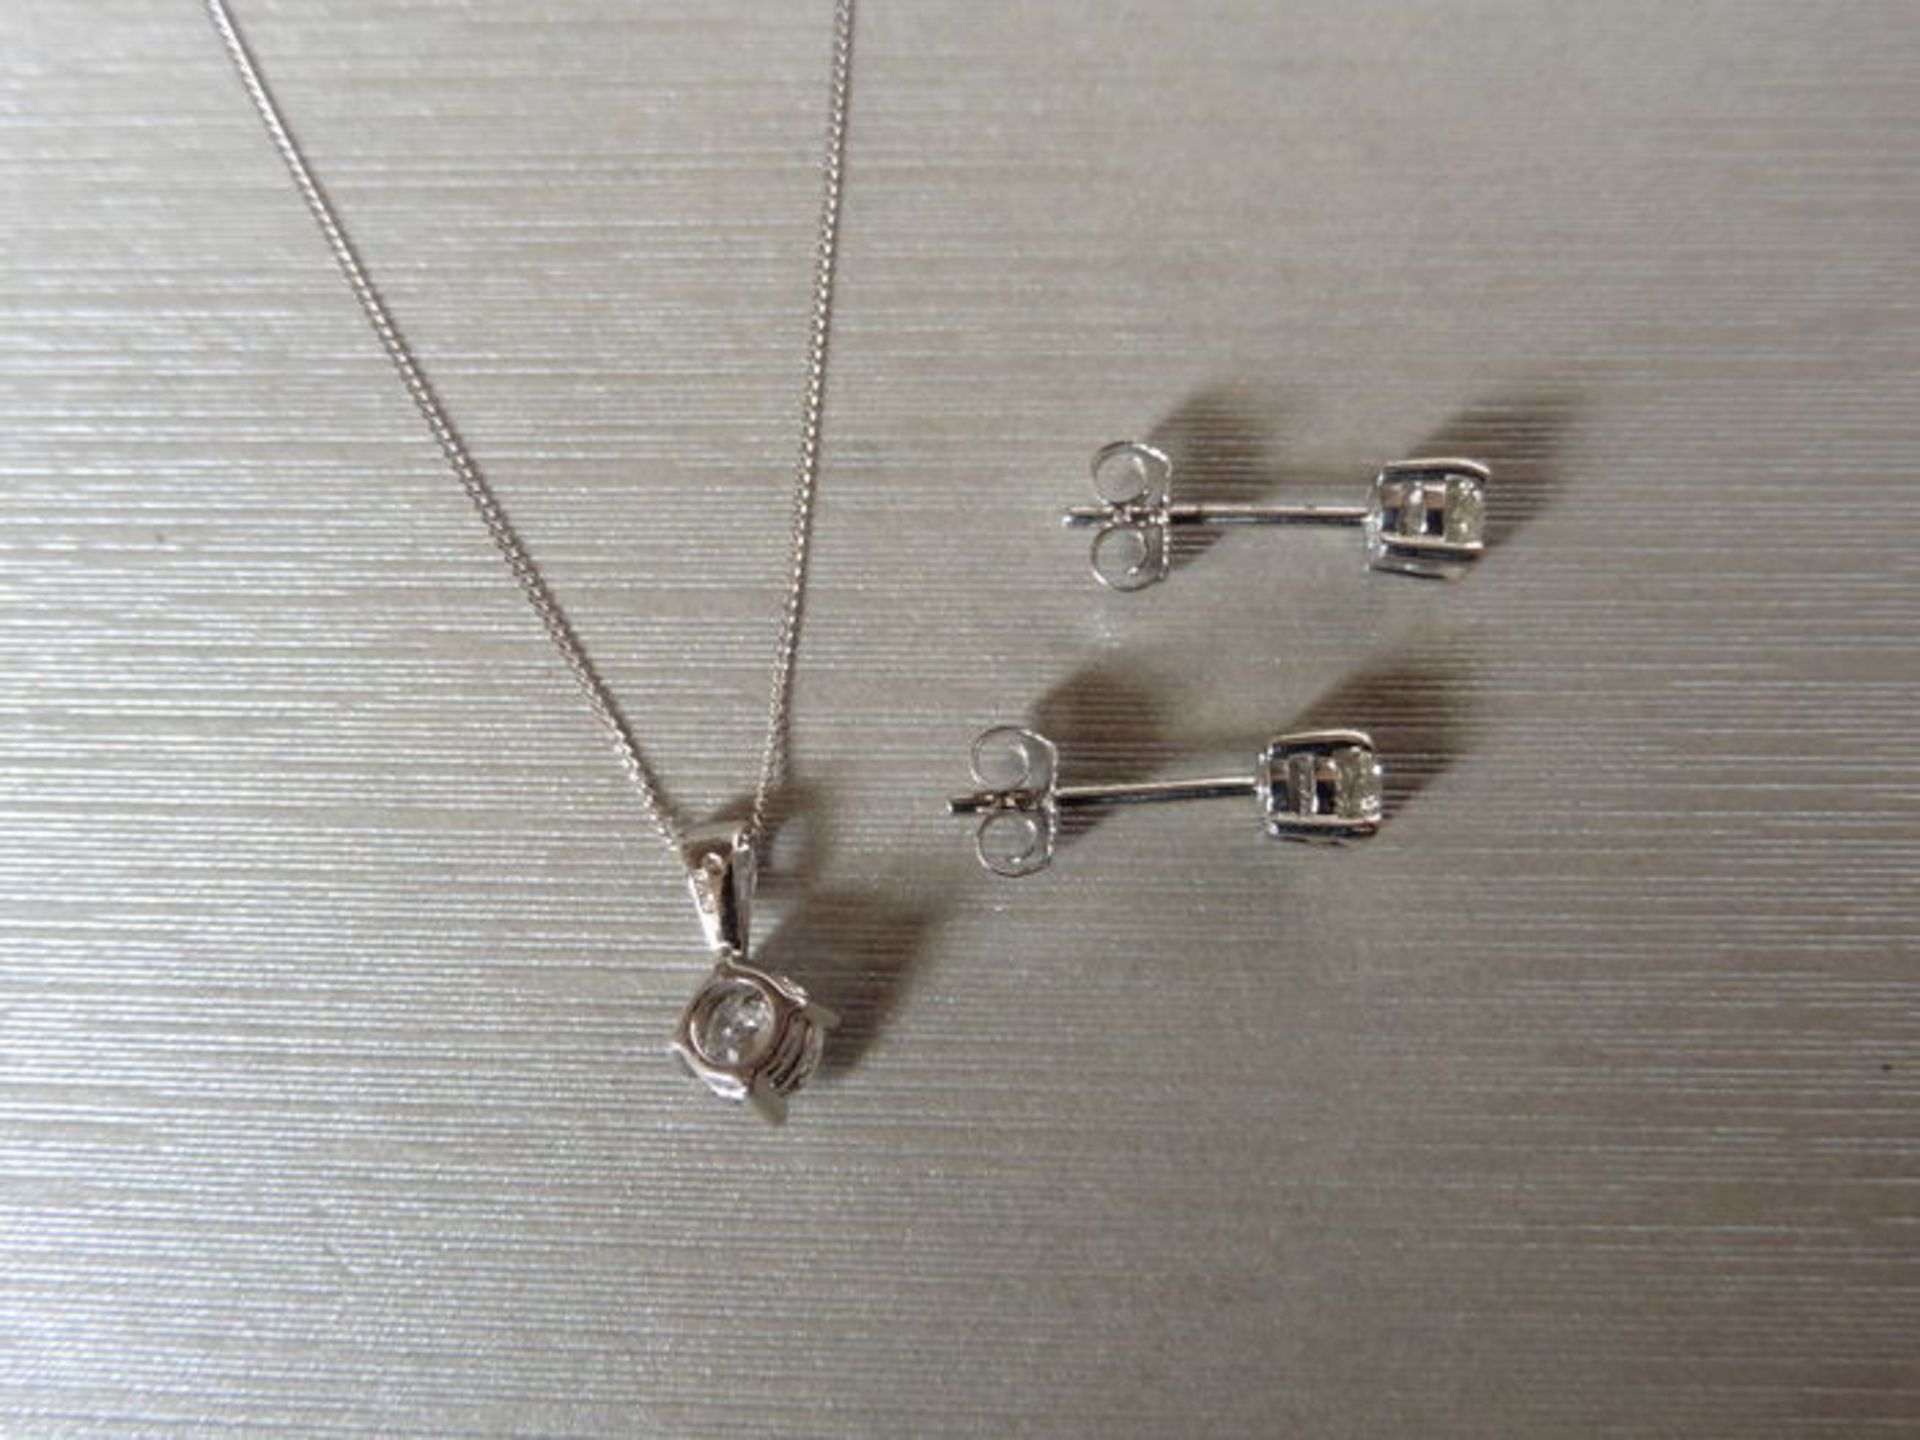 0.25ct / 0.50ct diamond pendant and earring set in platinum. Pendant - 0.25ct brilliant cut diamond, - Image 2 of 2